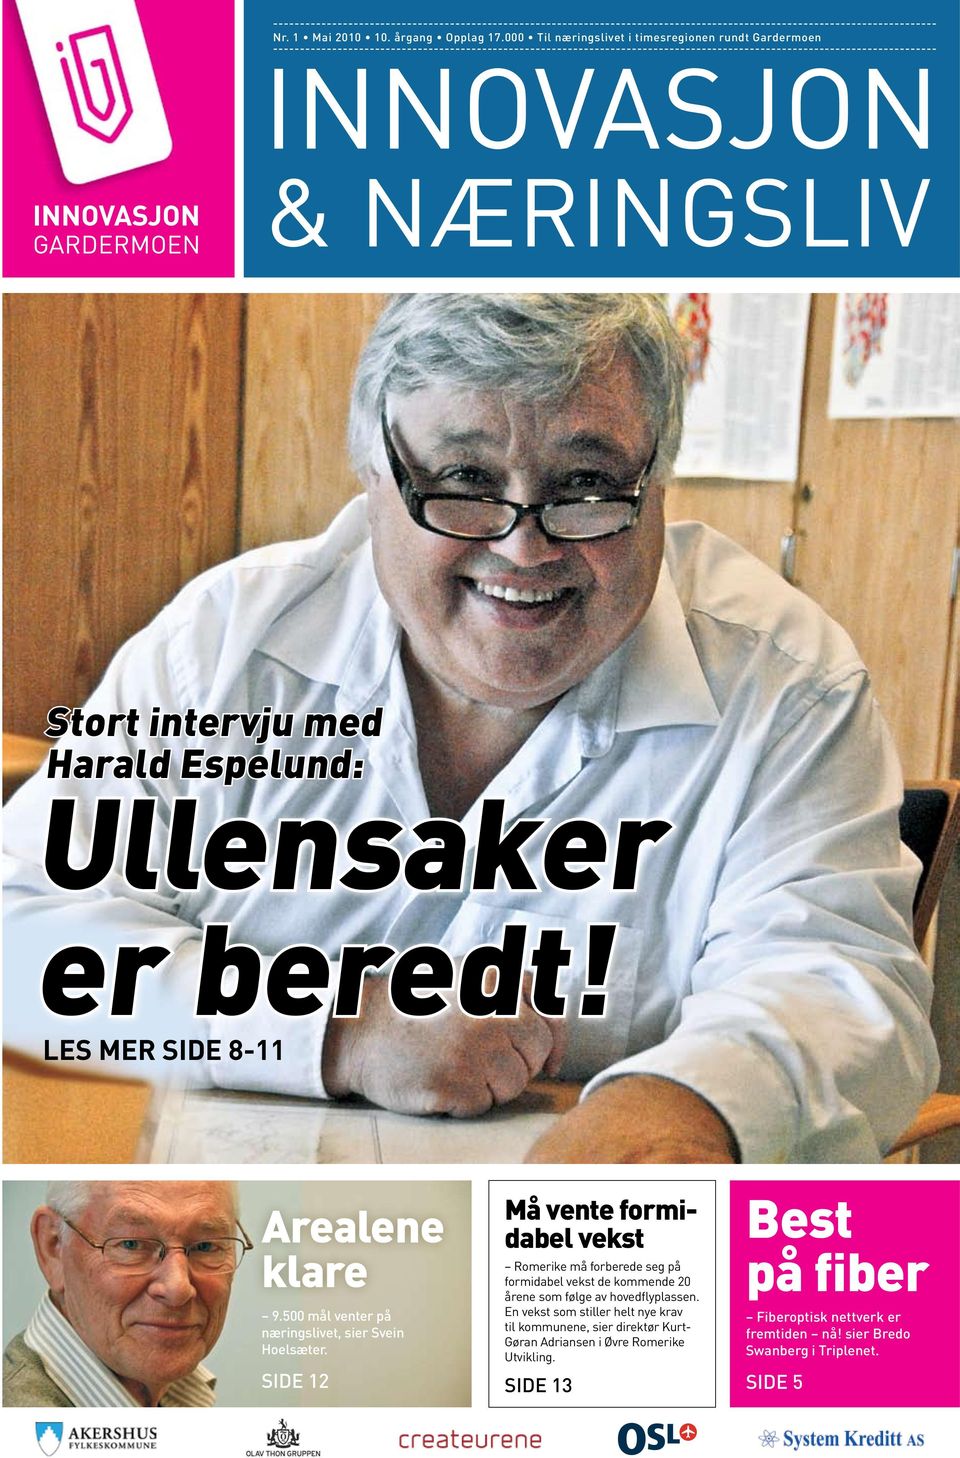 Harald Espelund: Ullensaker er beredt! LES MER Side 8-11 Arealene klare 9.500 mål venter på næringslivet, sier Svein Hoelsæter.